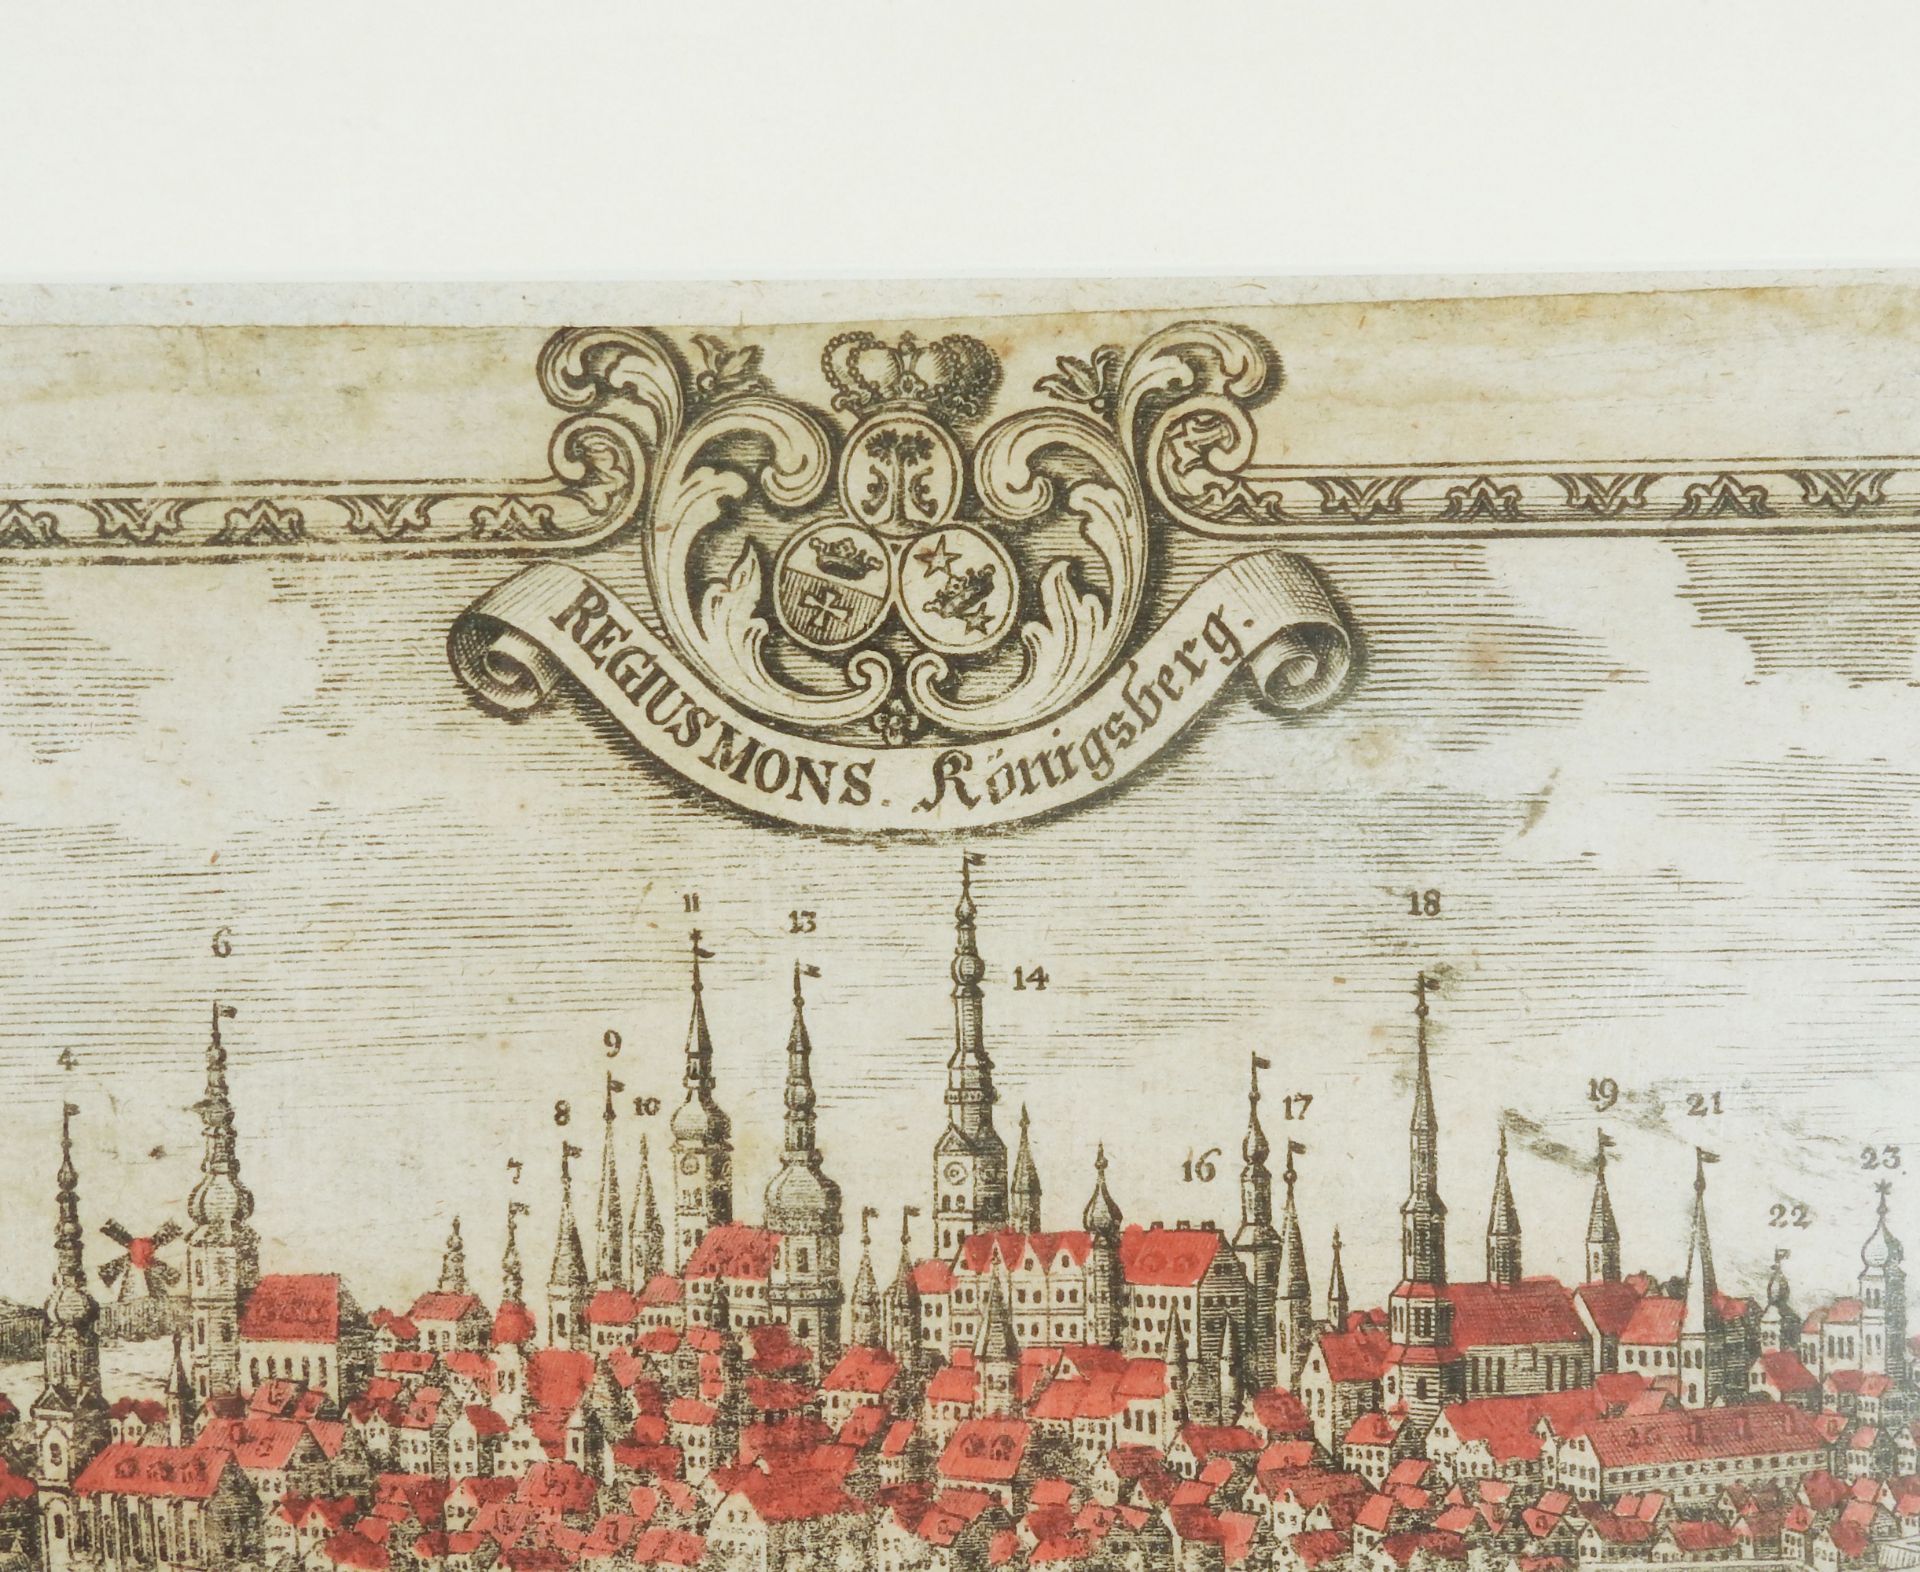 Vedute von Königsberg - Image 2 of 5